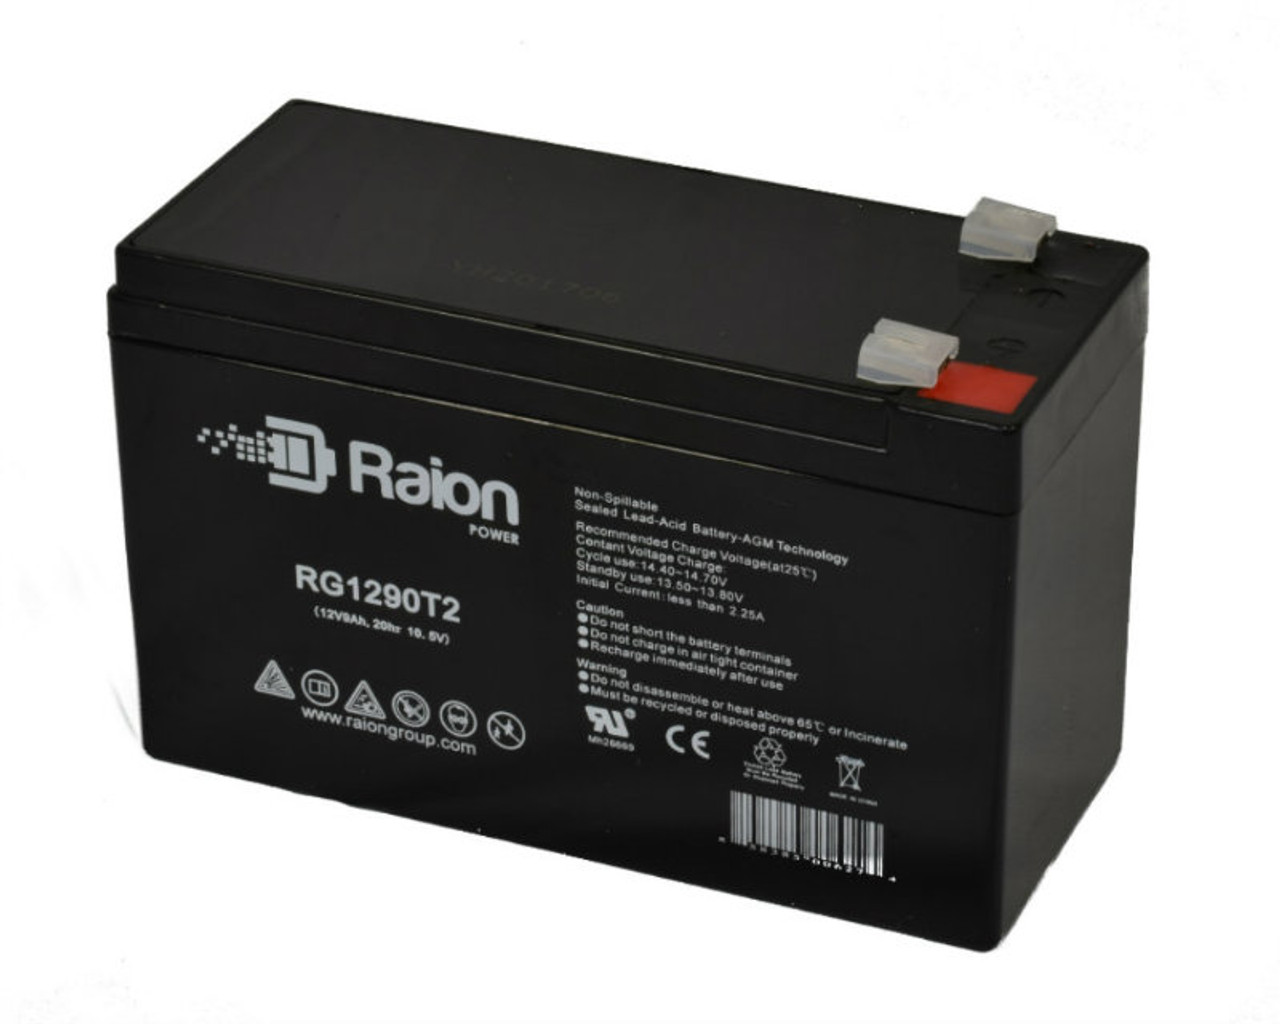 Raion Power RG1290T2 12V 9Ah AGM Battery for SigmasTek SP12-9